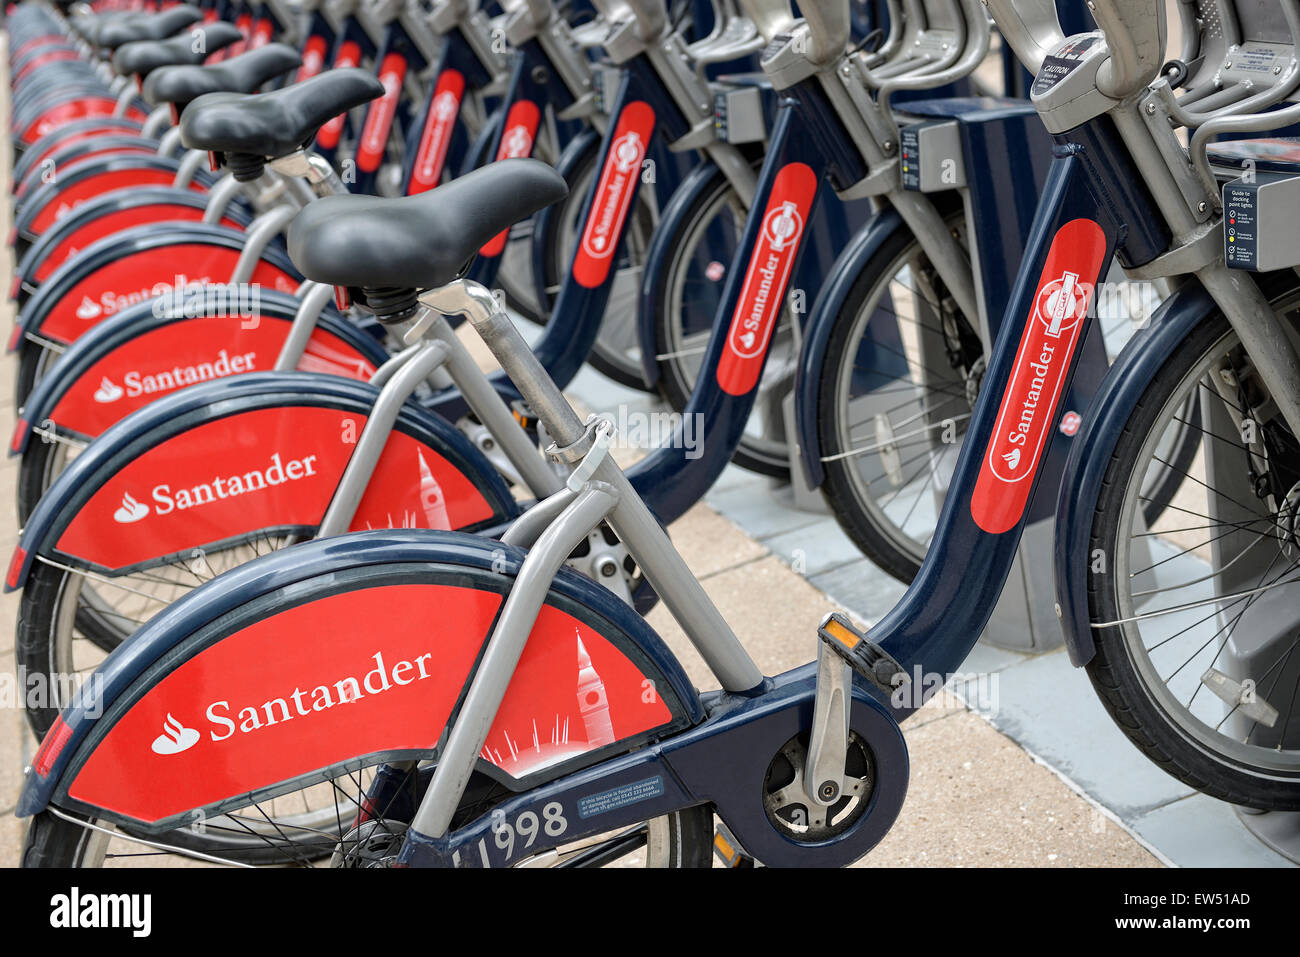 Santander Location de vélo Boris Vélos à une station d'accueil, Londres, Angleterre, Royaume-Uni. Banque D'Images